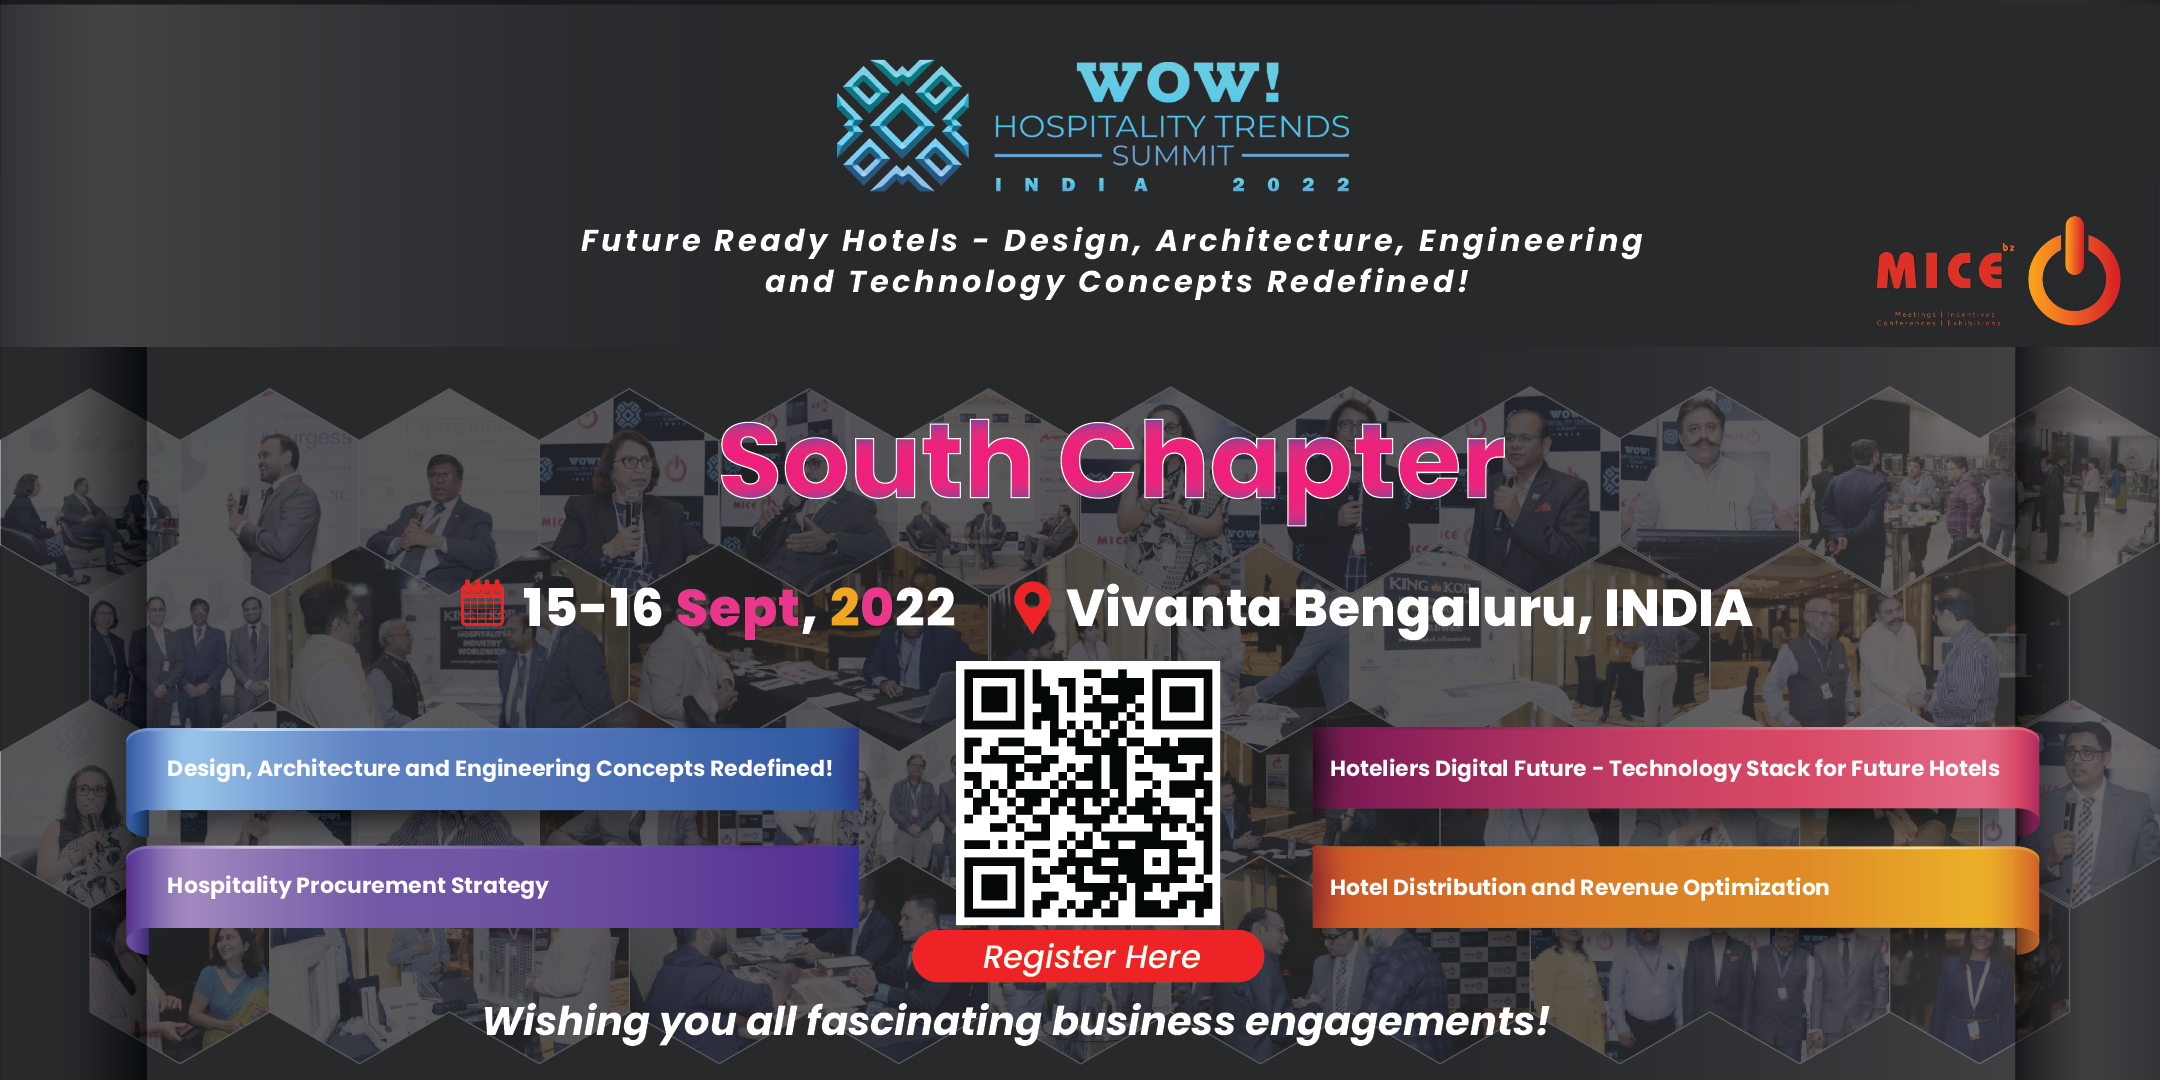 WOW Hospitality Trends Summit INDIA - South Chapter, Bangalore, Karnataka, India